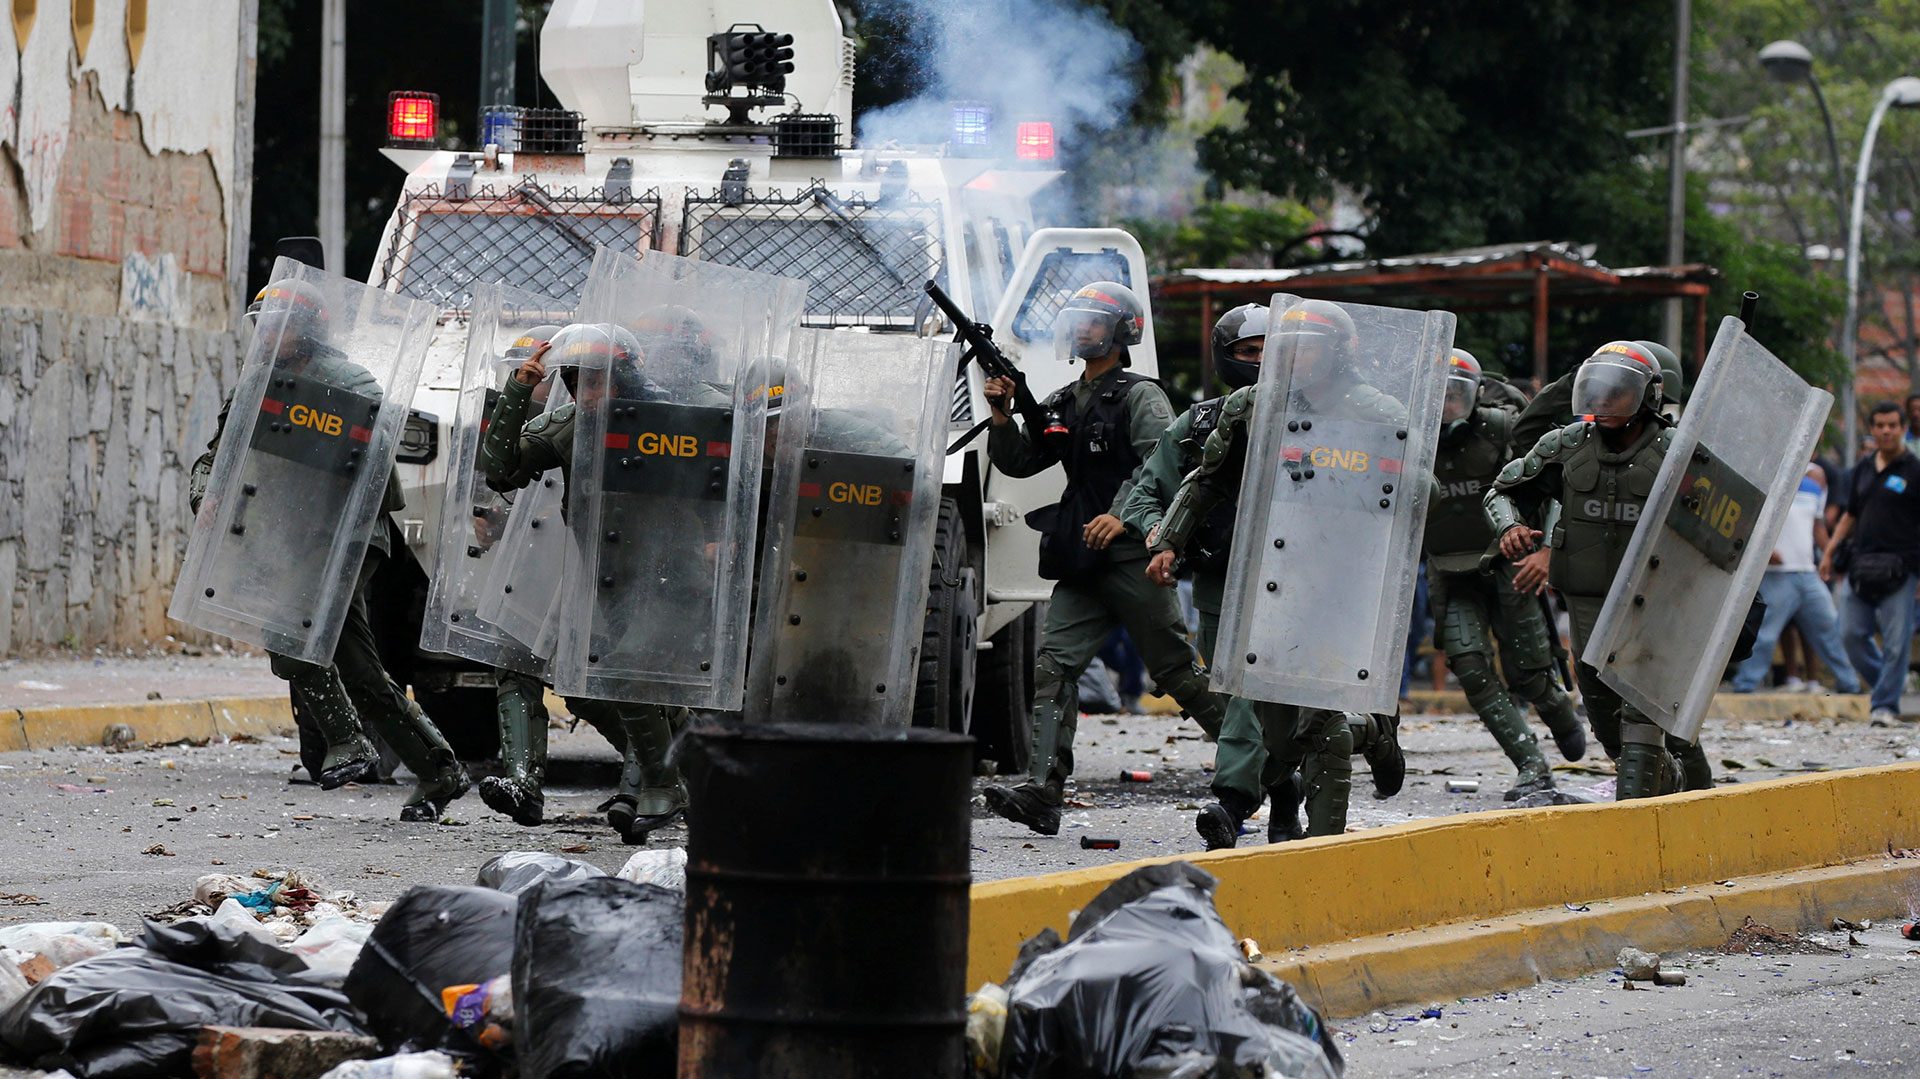 Efectivos de la Guardia Nacional Bolivariana reprimen una manifestación en Venezuela (REUTERS/Carlos García Rawlins/Archivo)